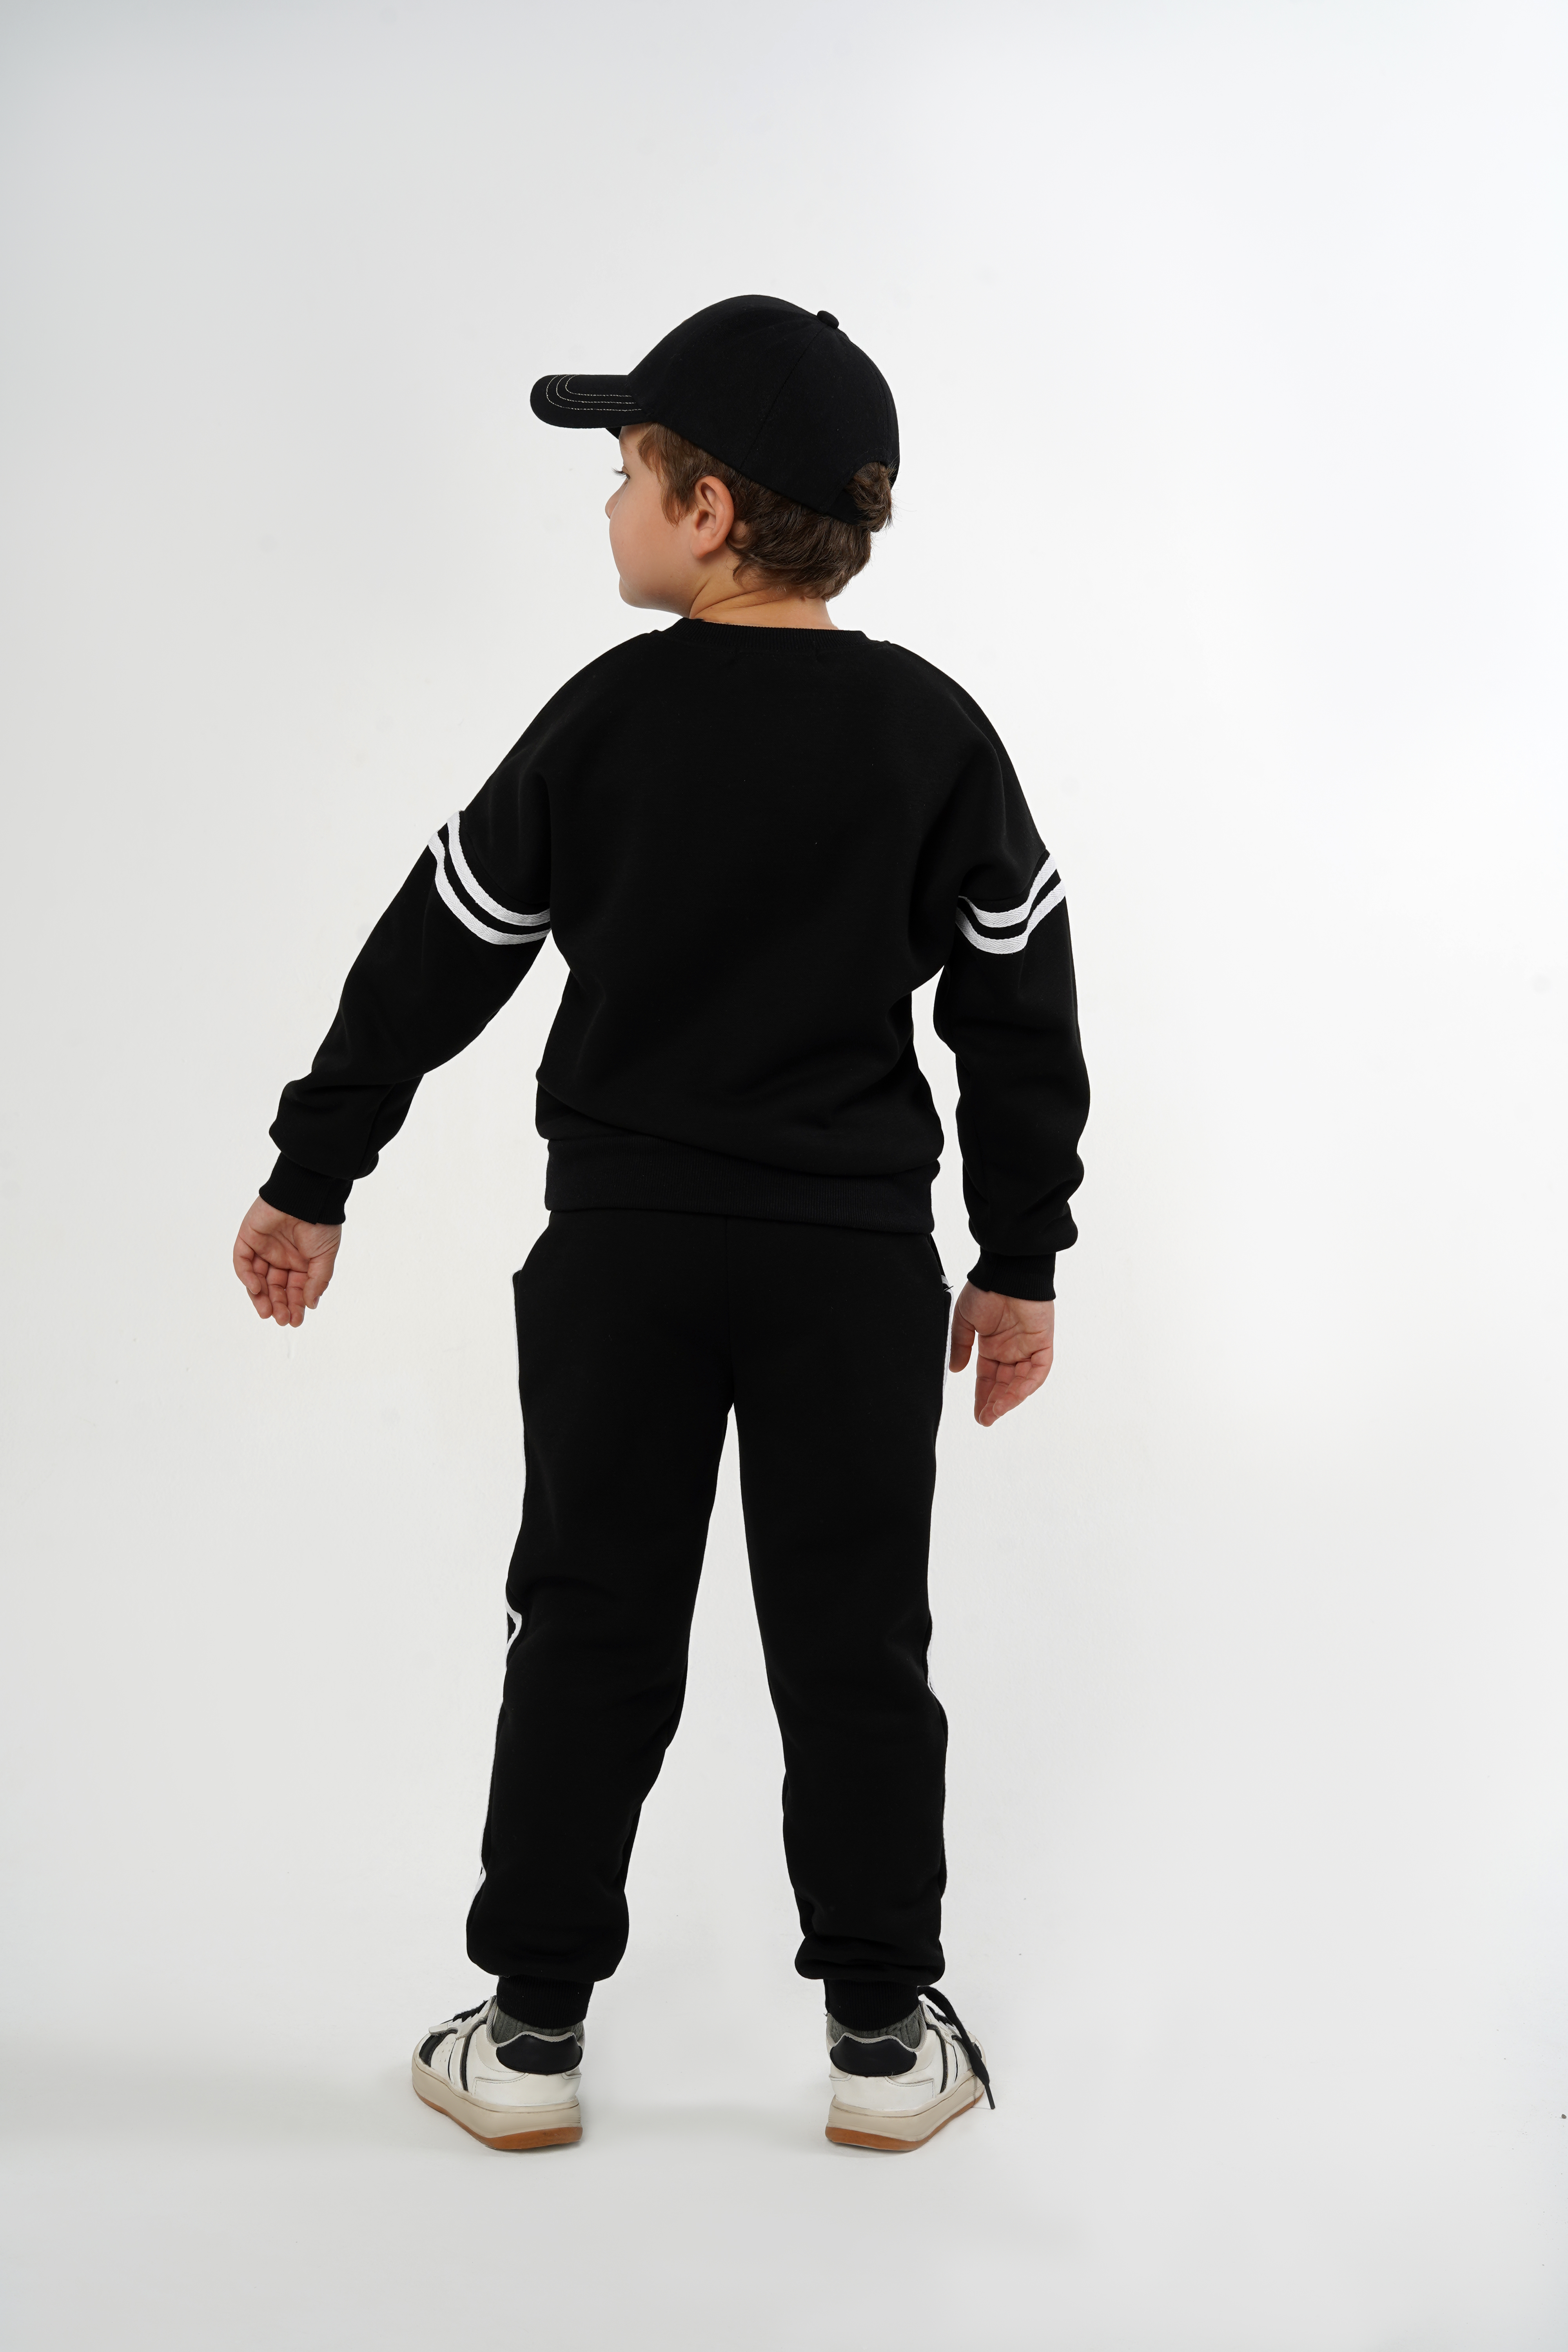 Спортивный костюм BabyDreams KS10/черный костюм для малыша - фото 4